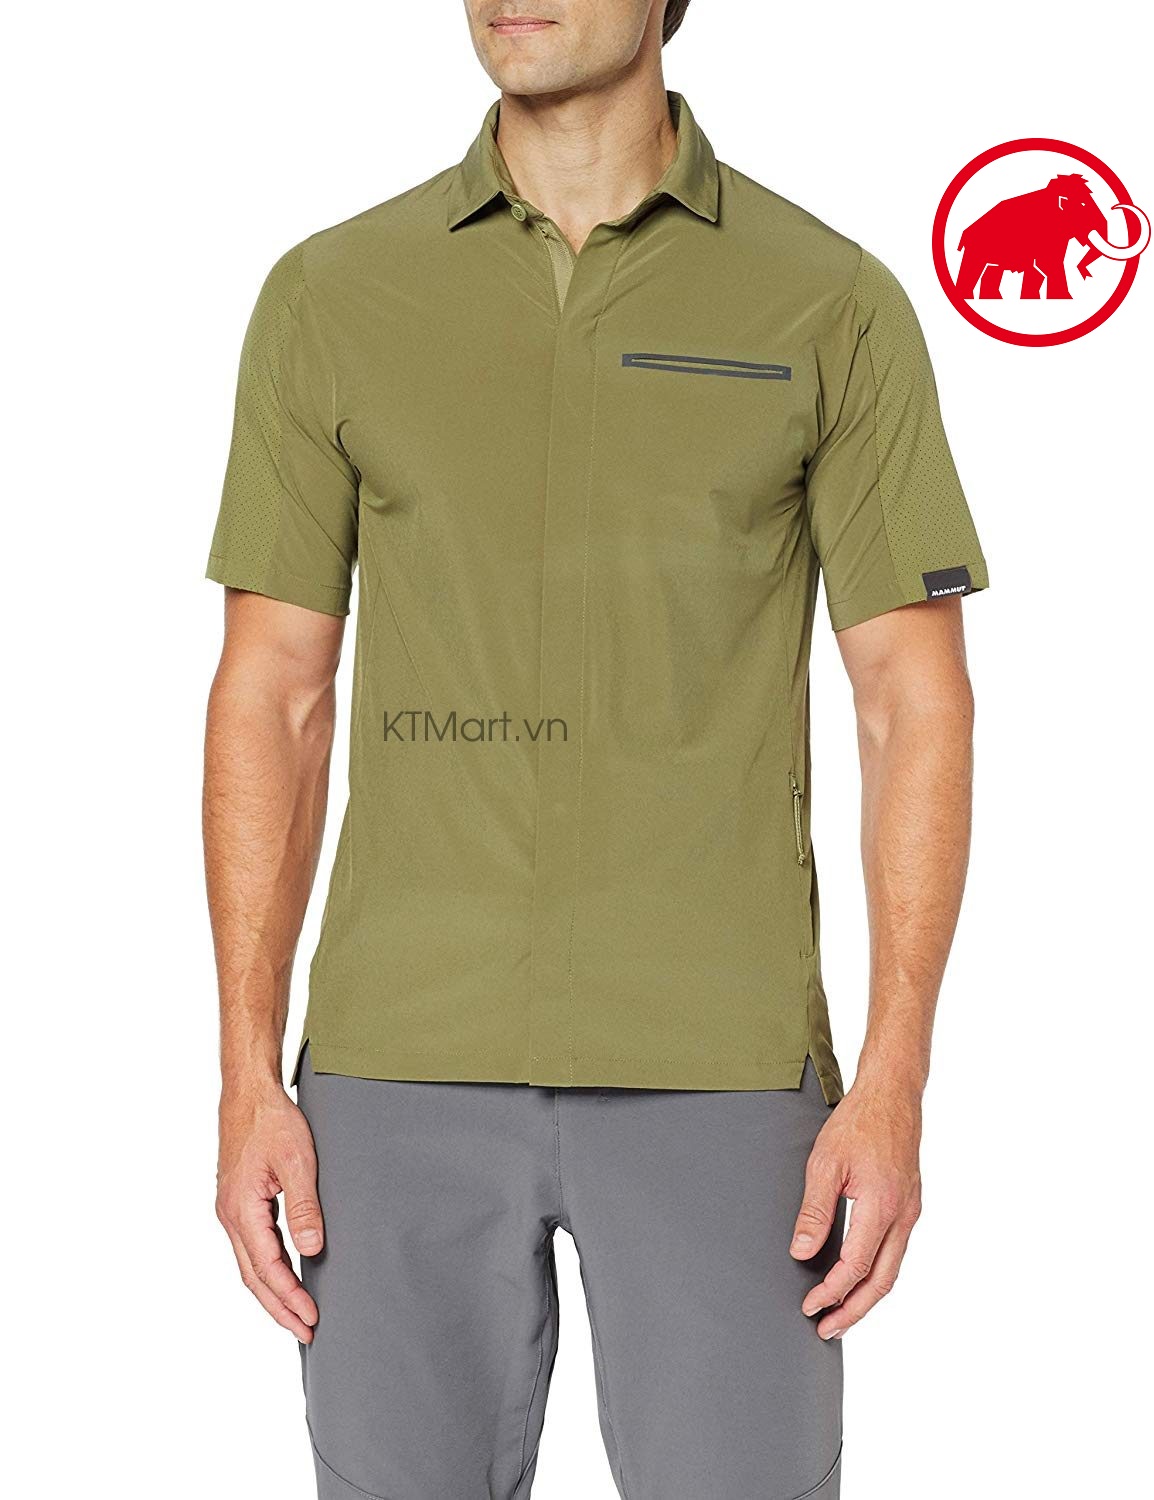 Mammut Crashiano Men’s Shirt 1015-00310 Mammut size M US